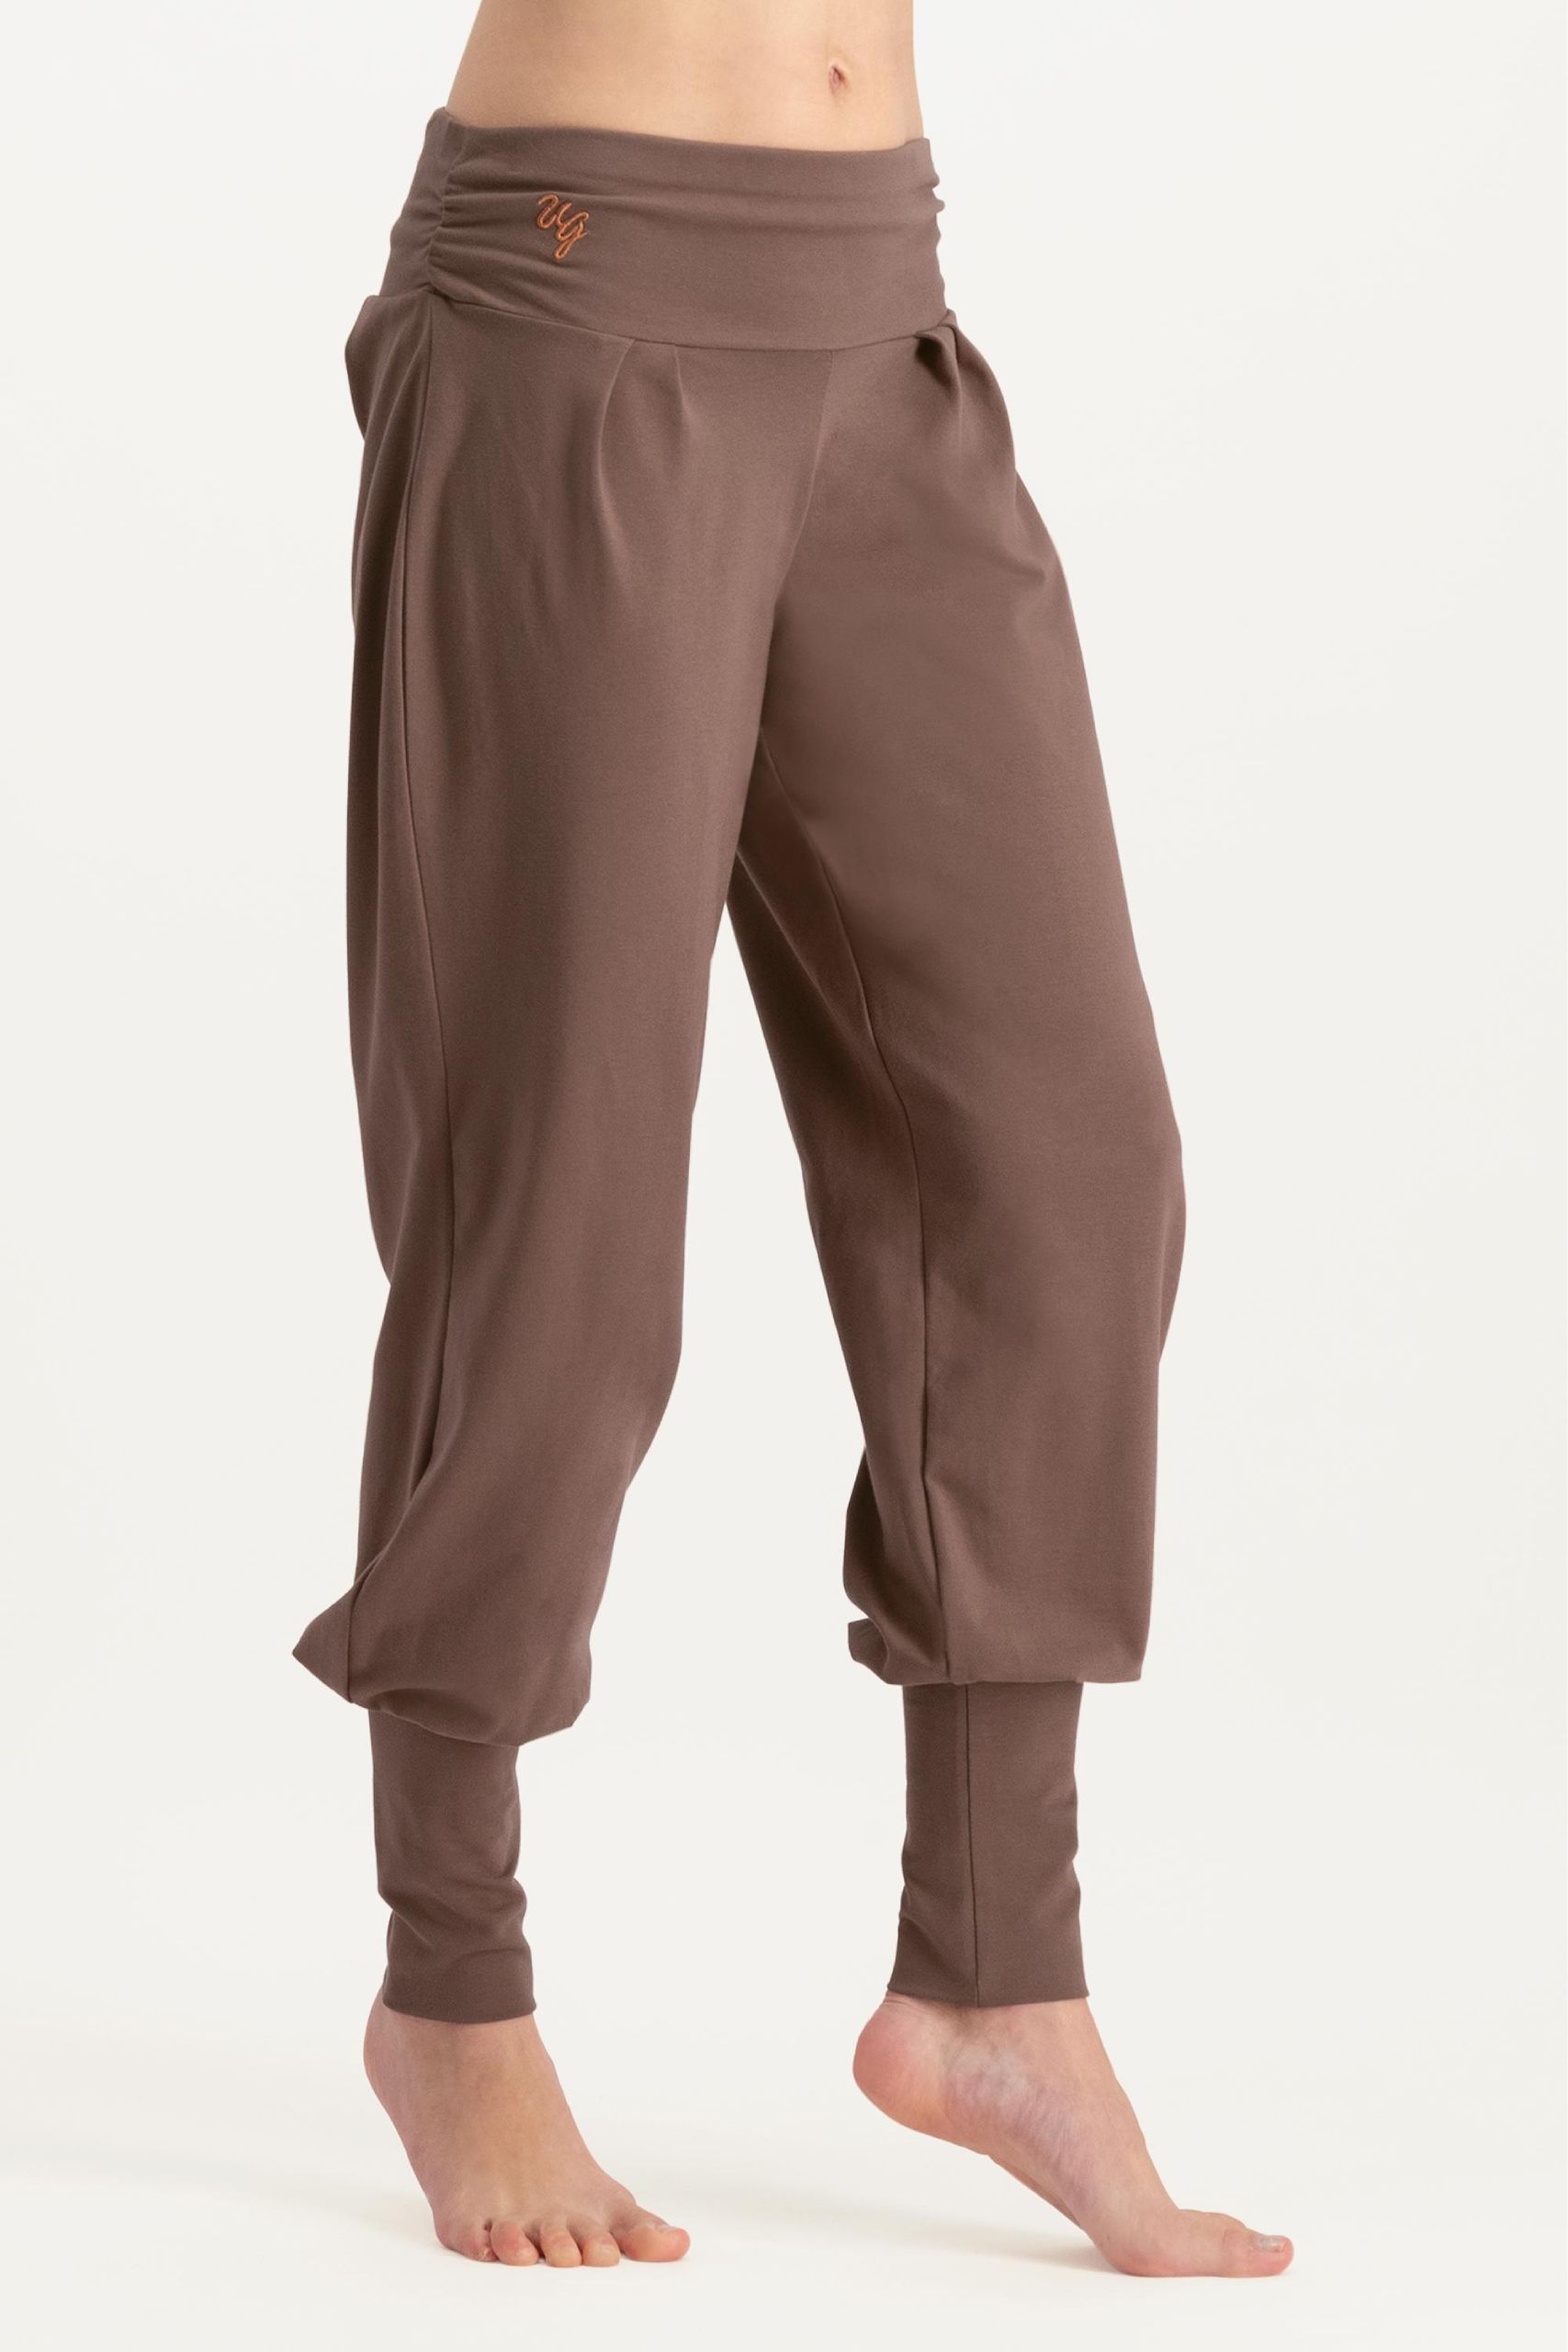 Portal 2 Women's Lounge Pants (XL), Women's